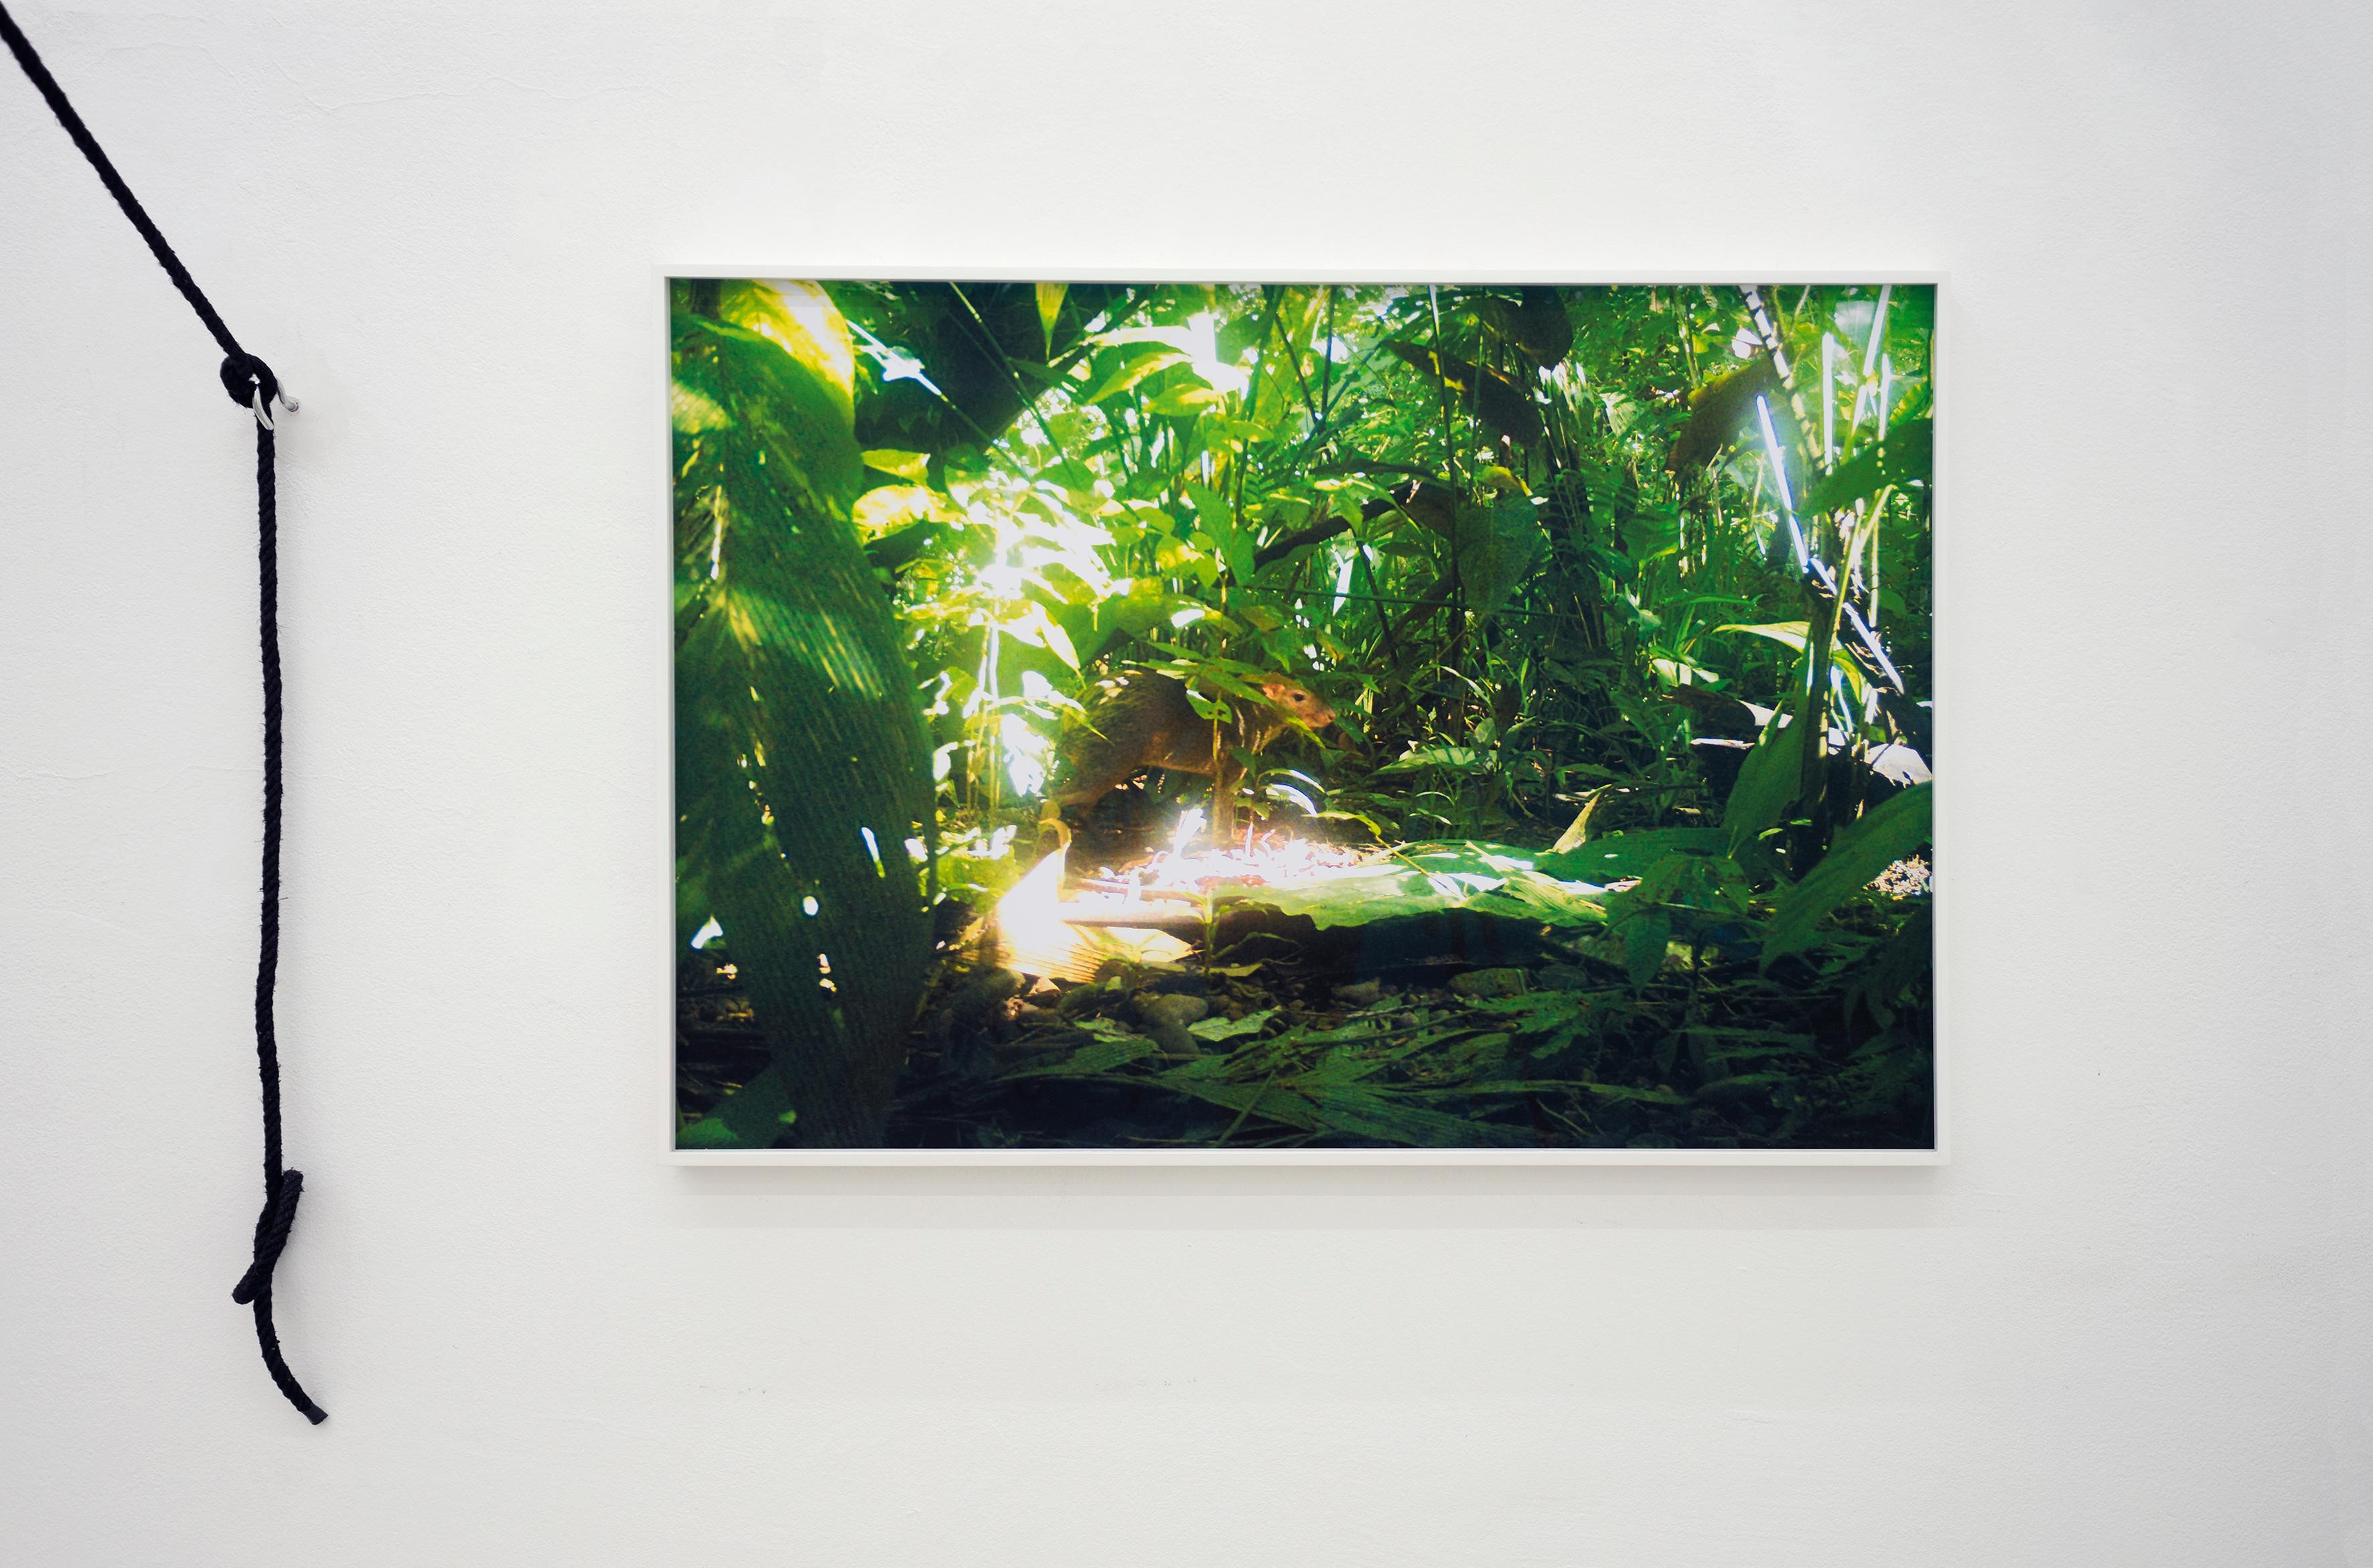 camera trap (Aguti) Ed. 2/3 - Contemporary Jungle Landscape Photography  For Sale 2